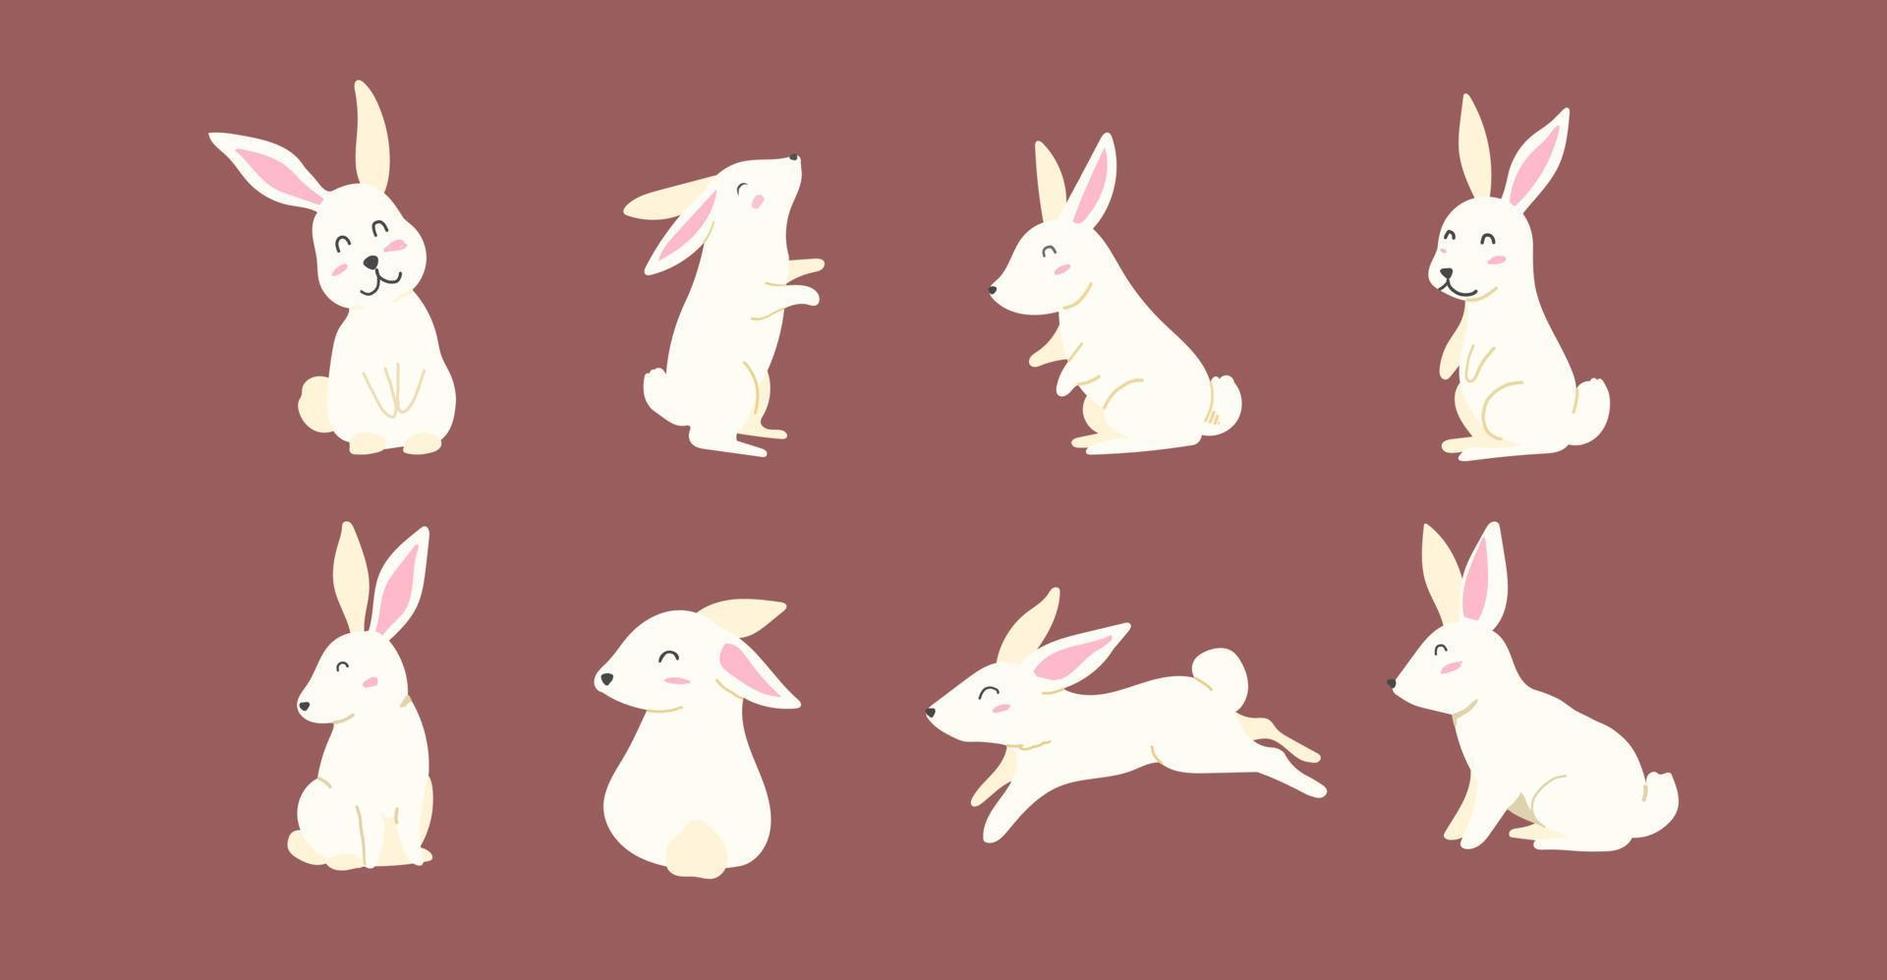 collection dessinée à la main pour pâques avec des personnages de lapin mignons. illustration vectorielle de joyeuses pâques dessin animé vecteur